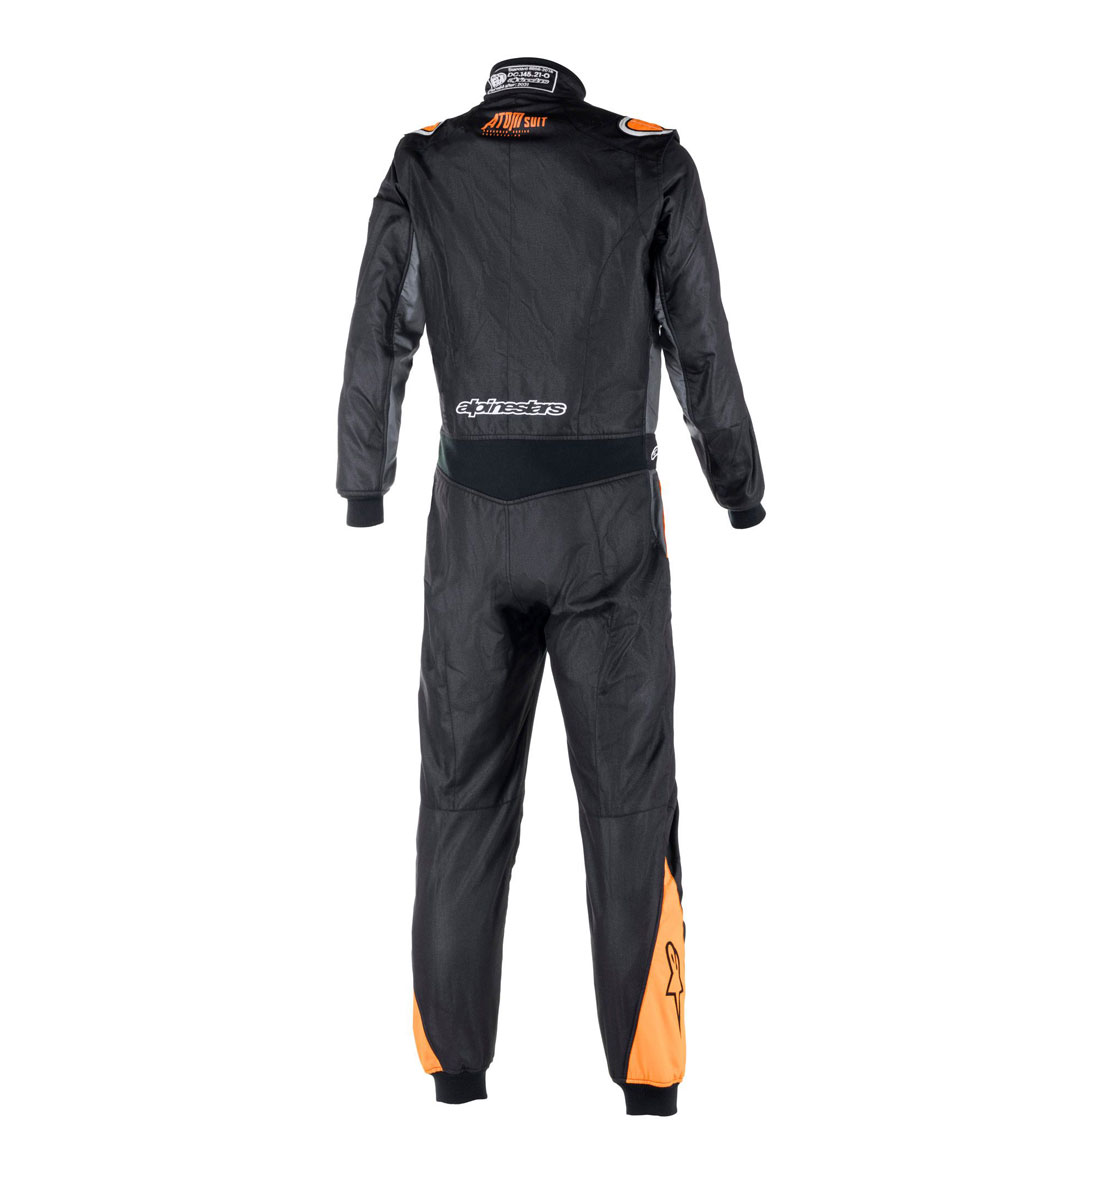 Alpinestars Atom Race Suit - Black/Anthracite/Orange Fluo